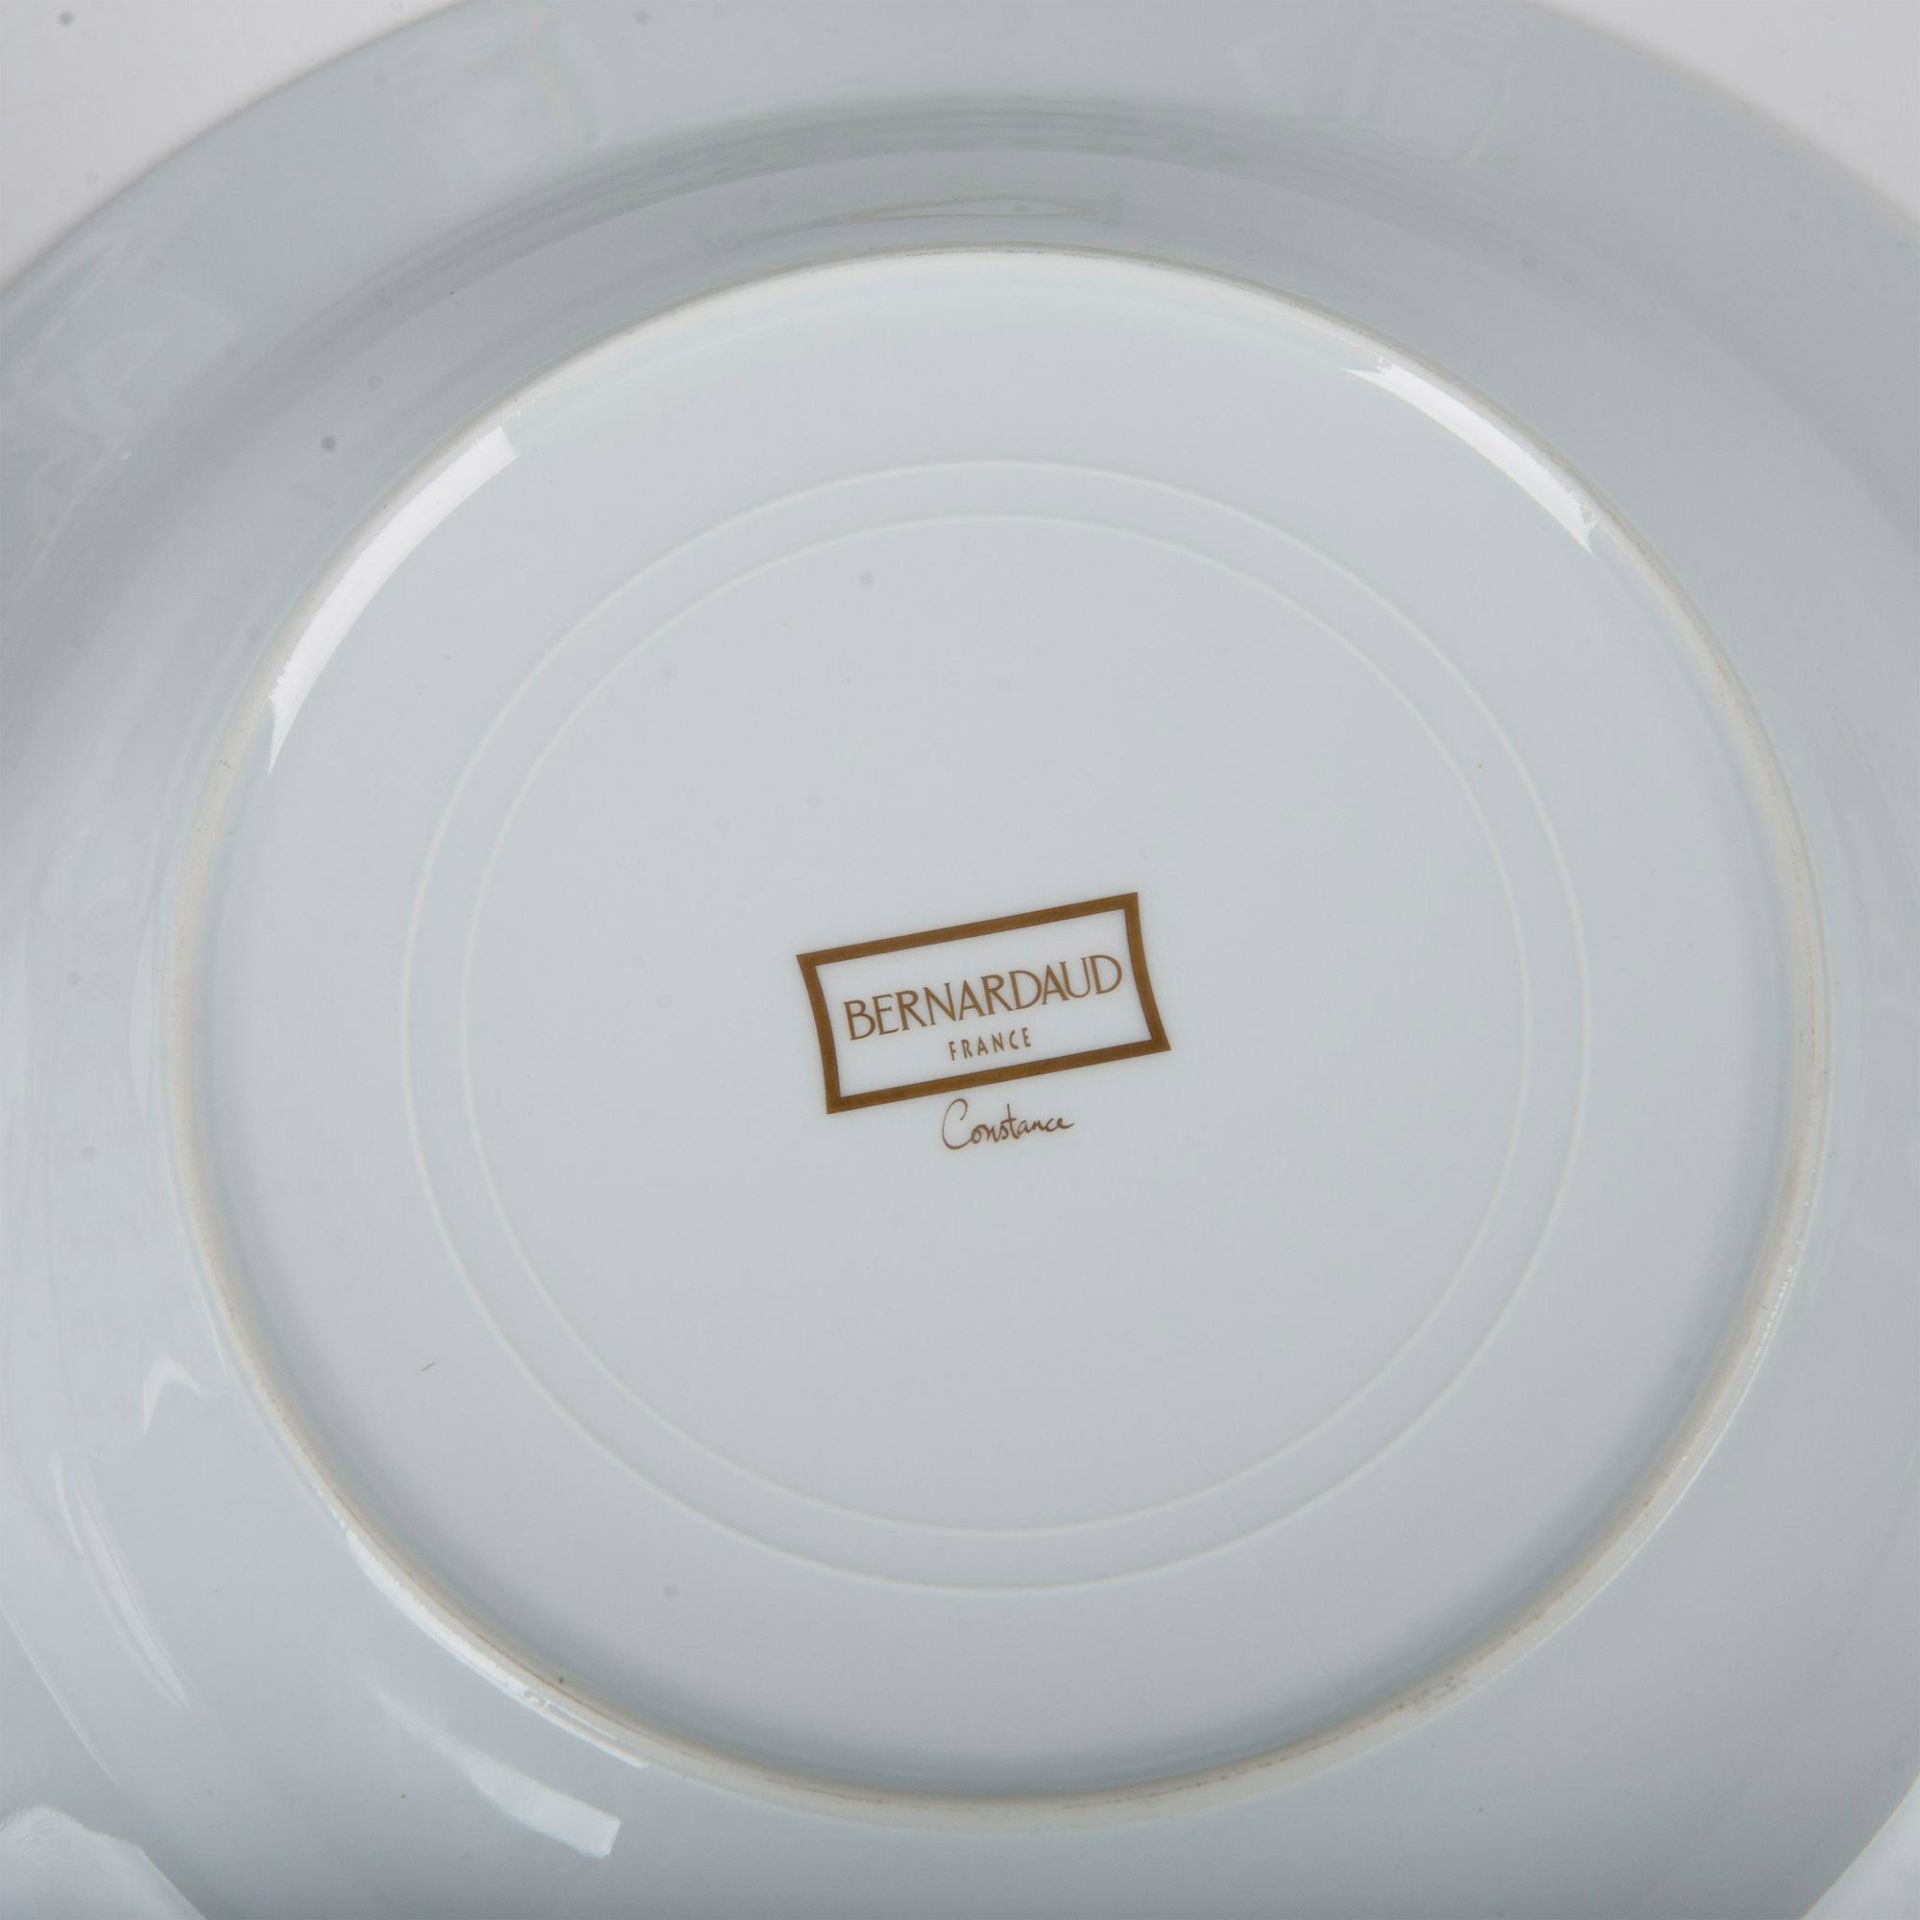 6pc Bernardaud Limoges Porcelain Serving Dishes, Constance - Image 5 of 5